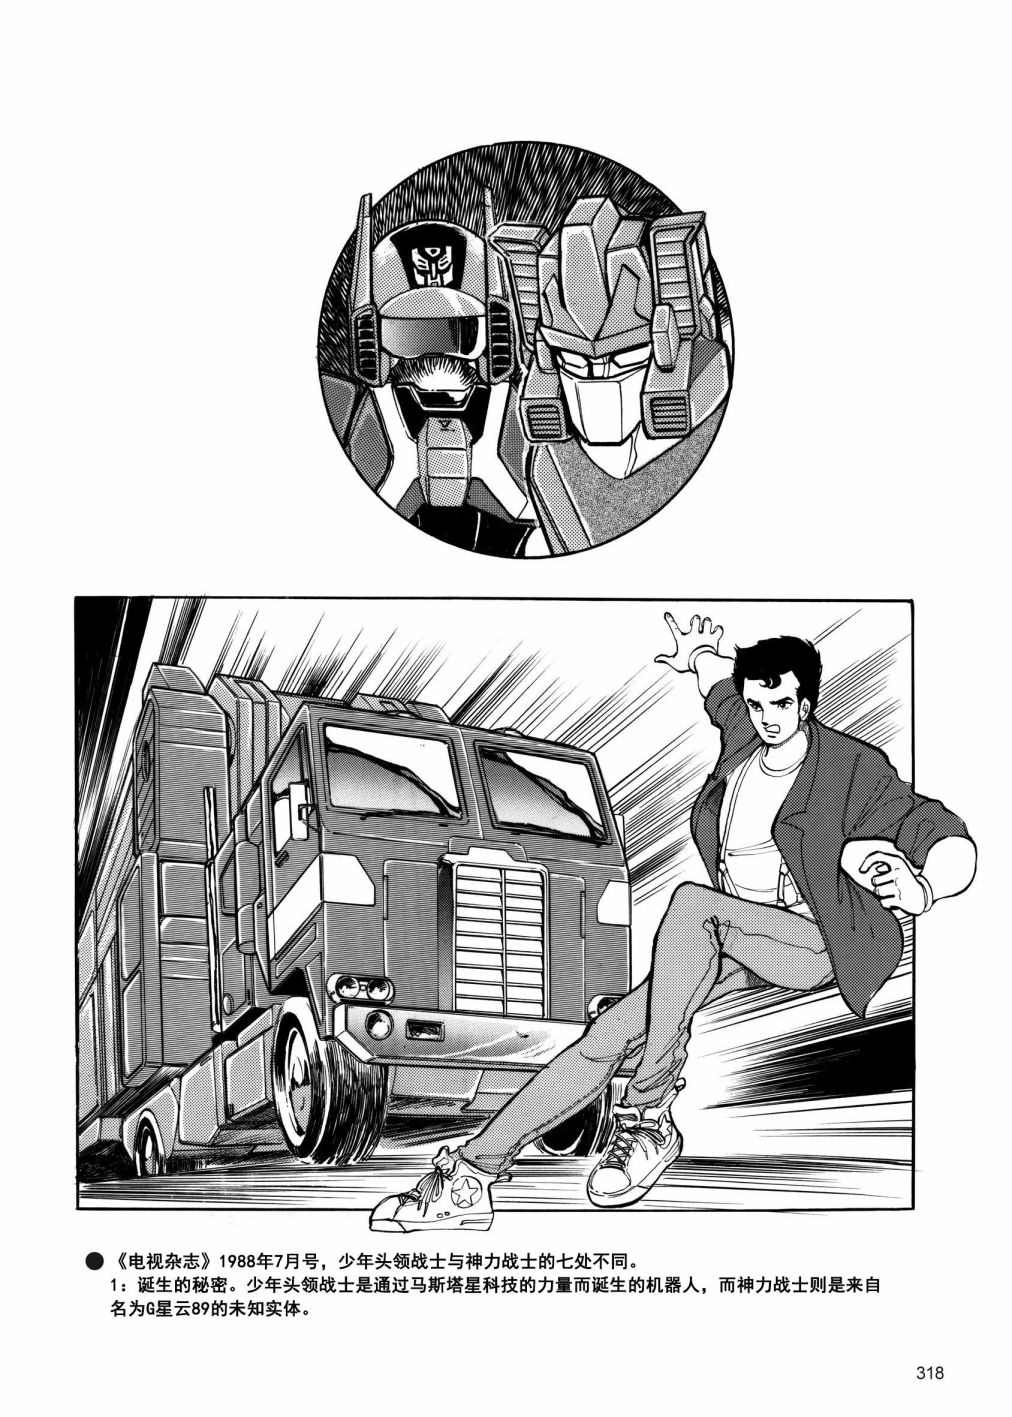 变形金刚日版G1杂志插画 - 战斗吧！超机械生命体变形金刚：超神勇者之力 - 2